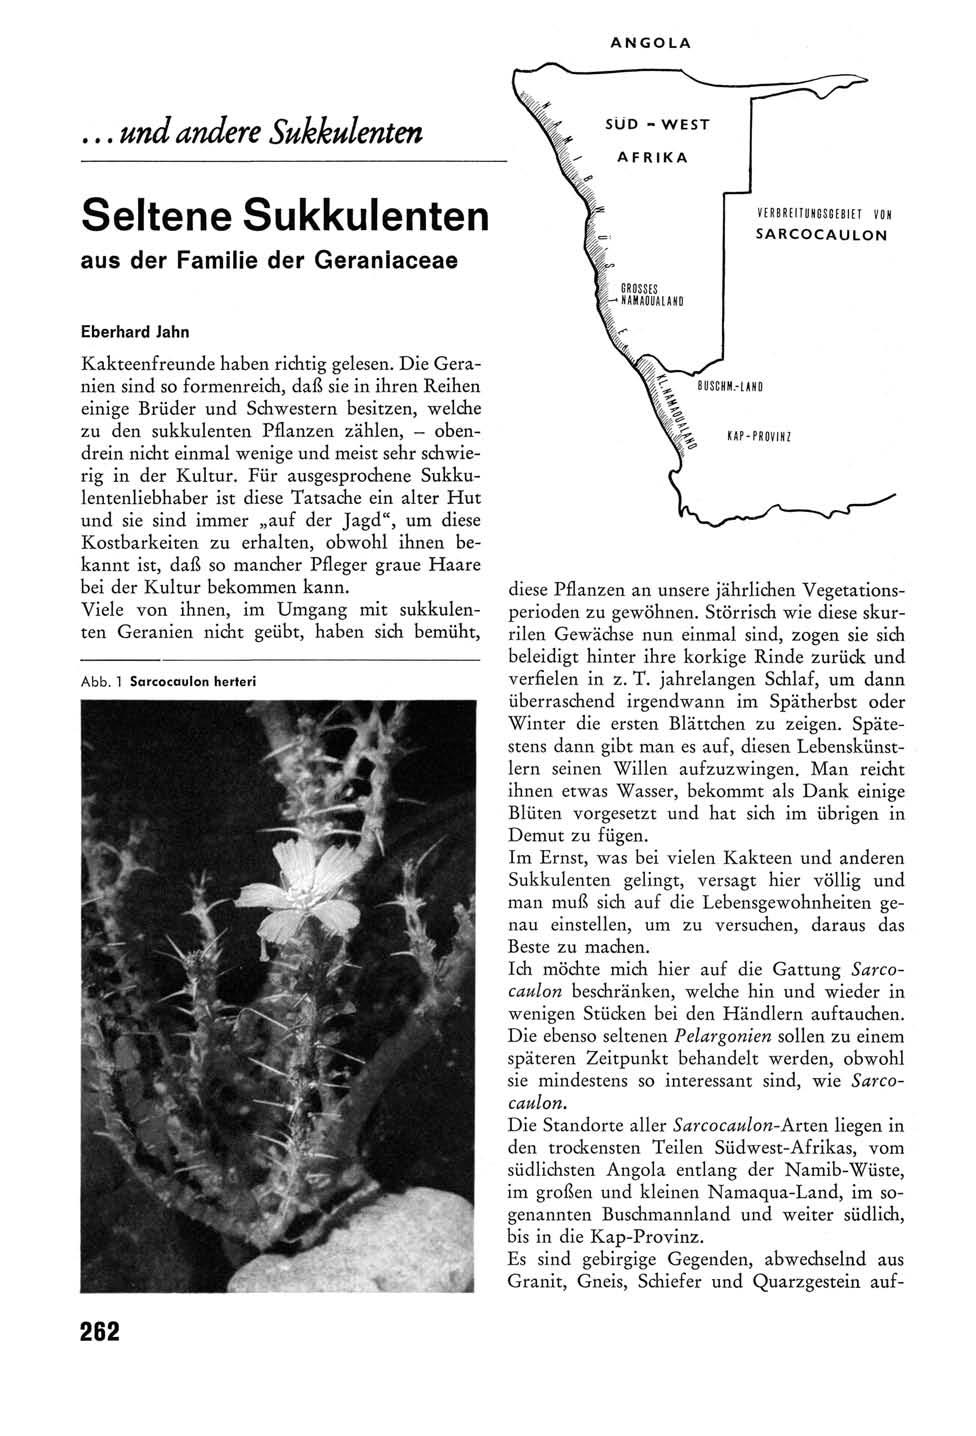 ... und andere Sukkulenten Seltene Sukkulenten aus der Familie der Geraniaceae Eberhard Jahn Kakteenfreunde haben richtig gelesen.